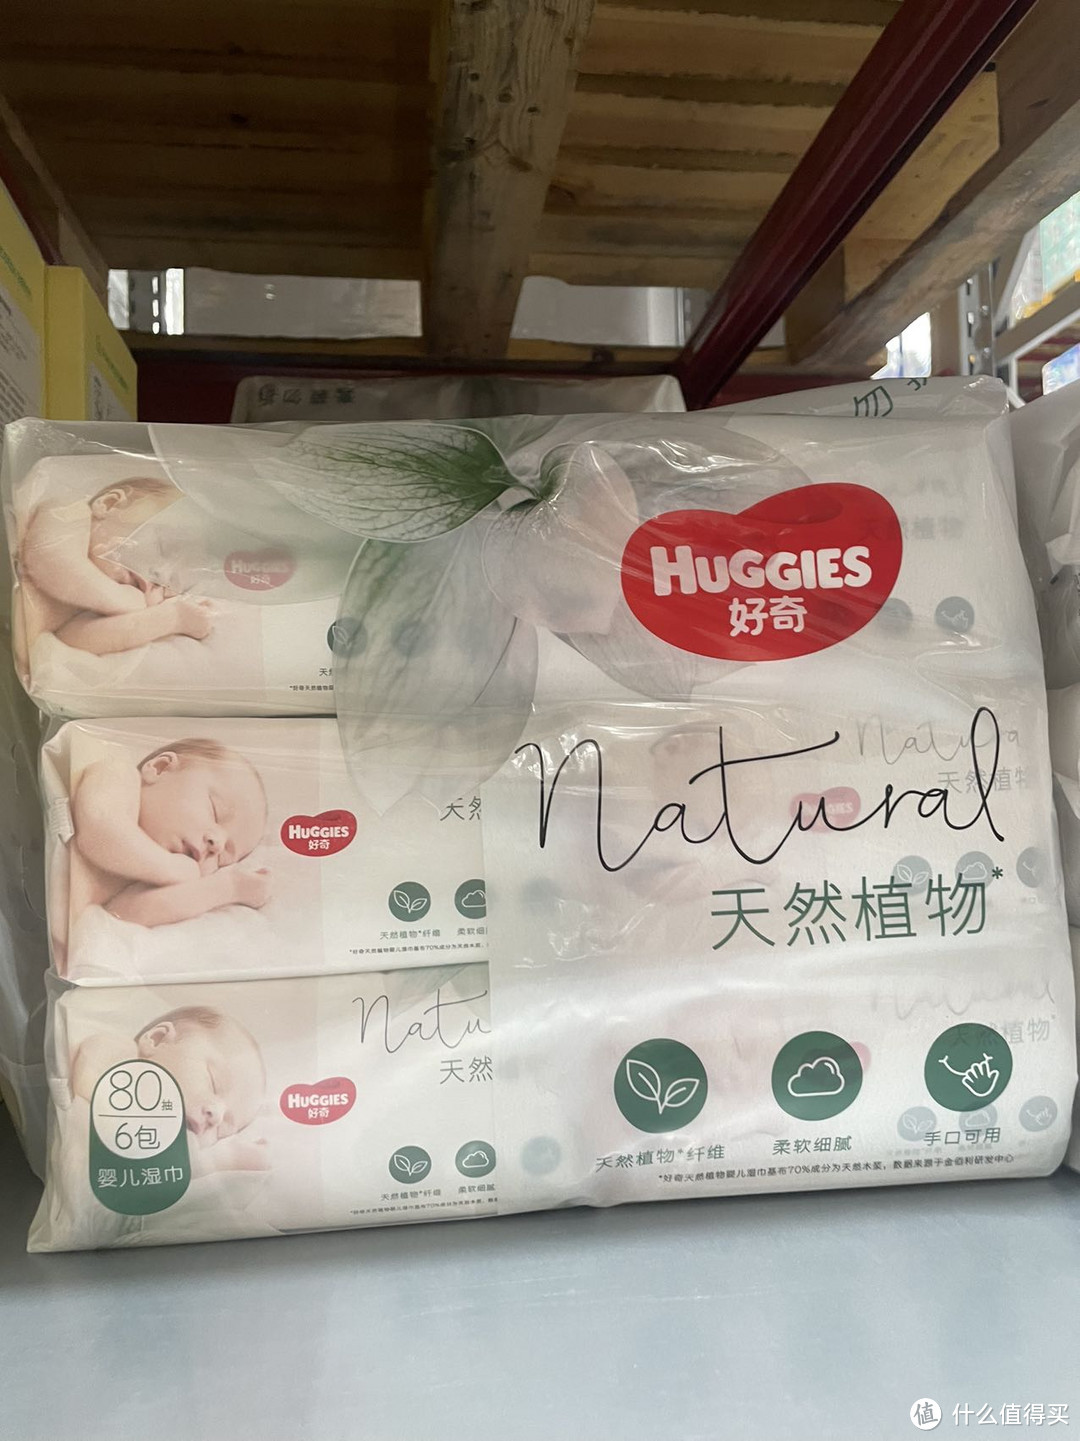 山姆超市婴儿大包装干湿纸巾推荐3款